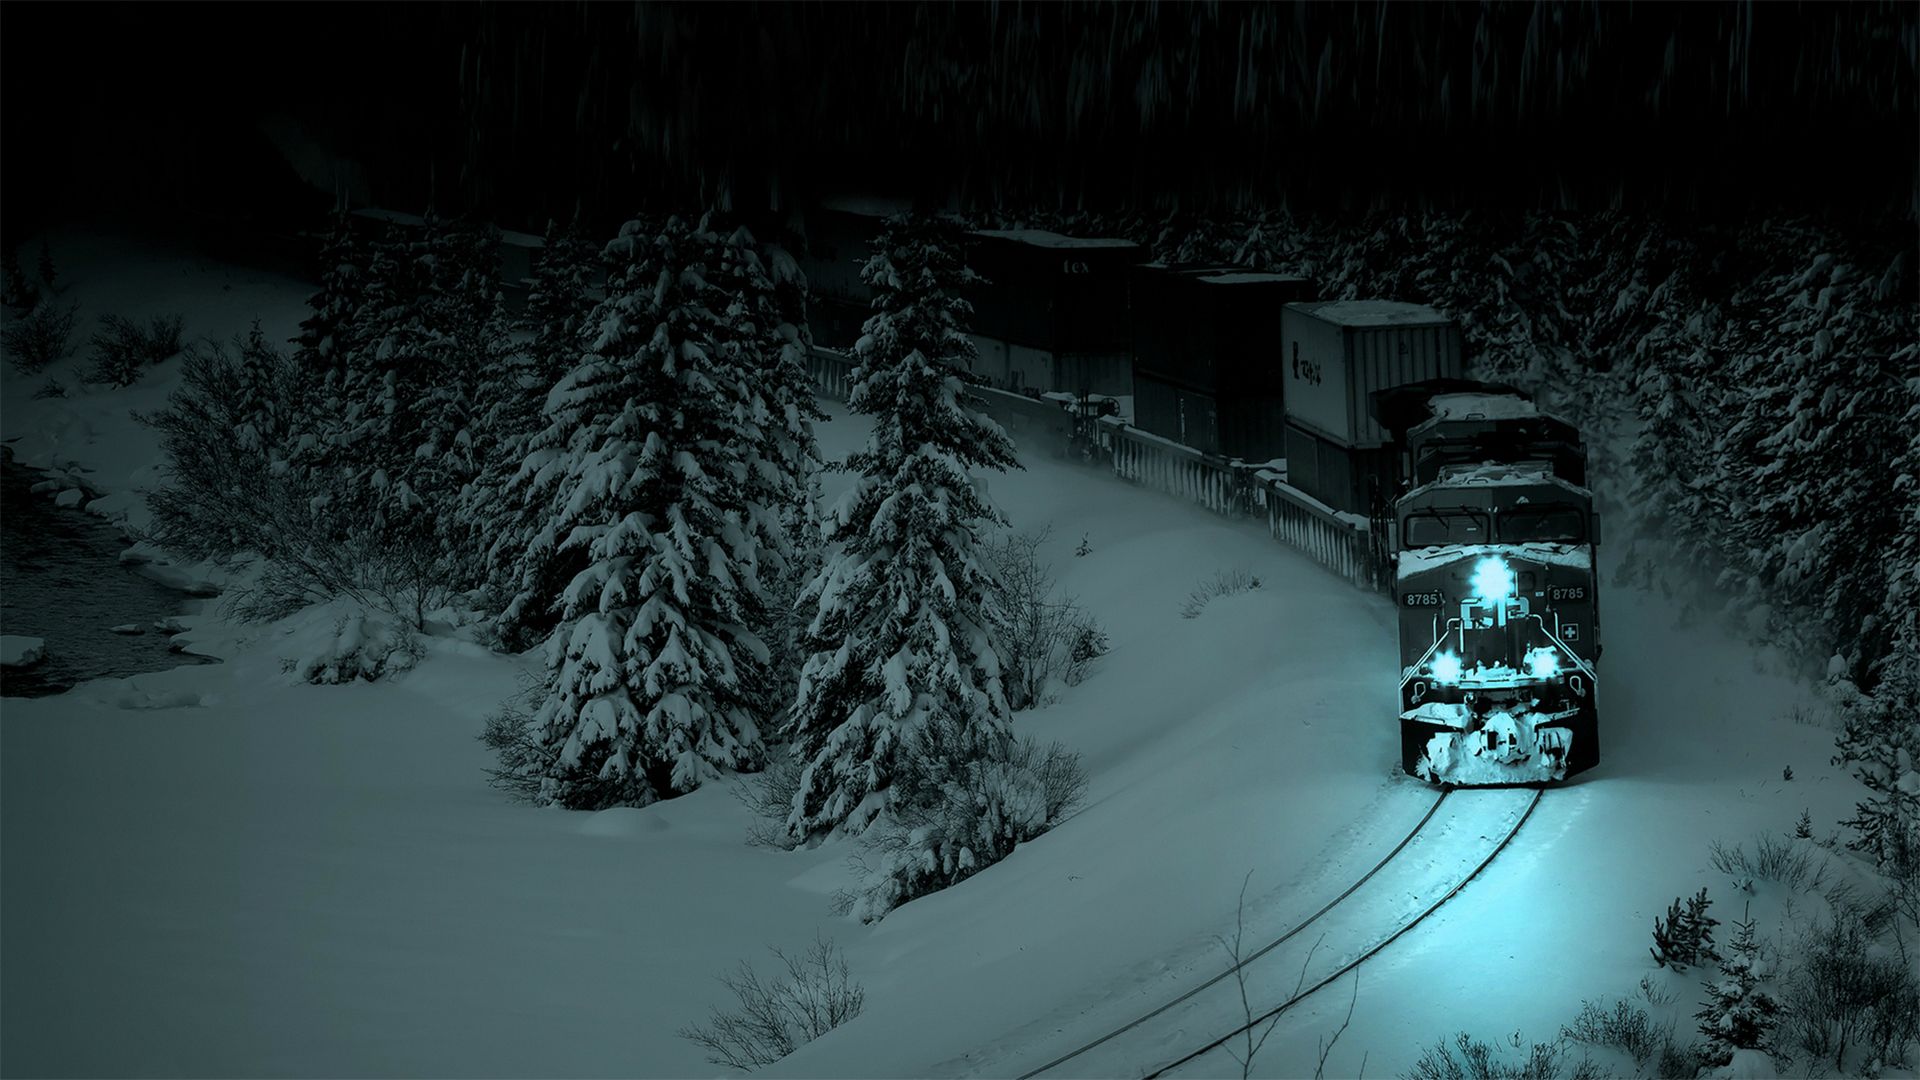 Գեղեցիկ ձմեռային լուսանկար. Գիշերը գնացք